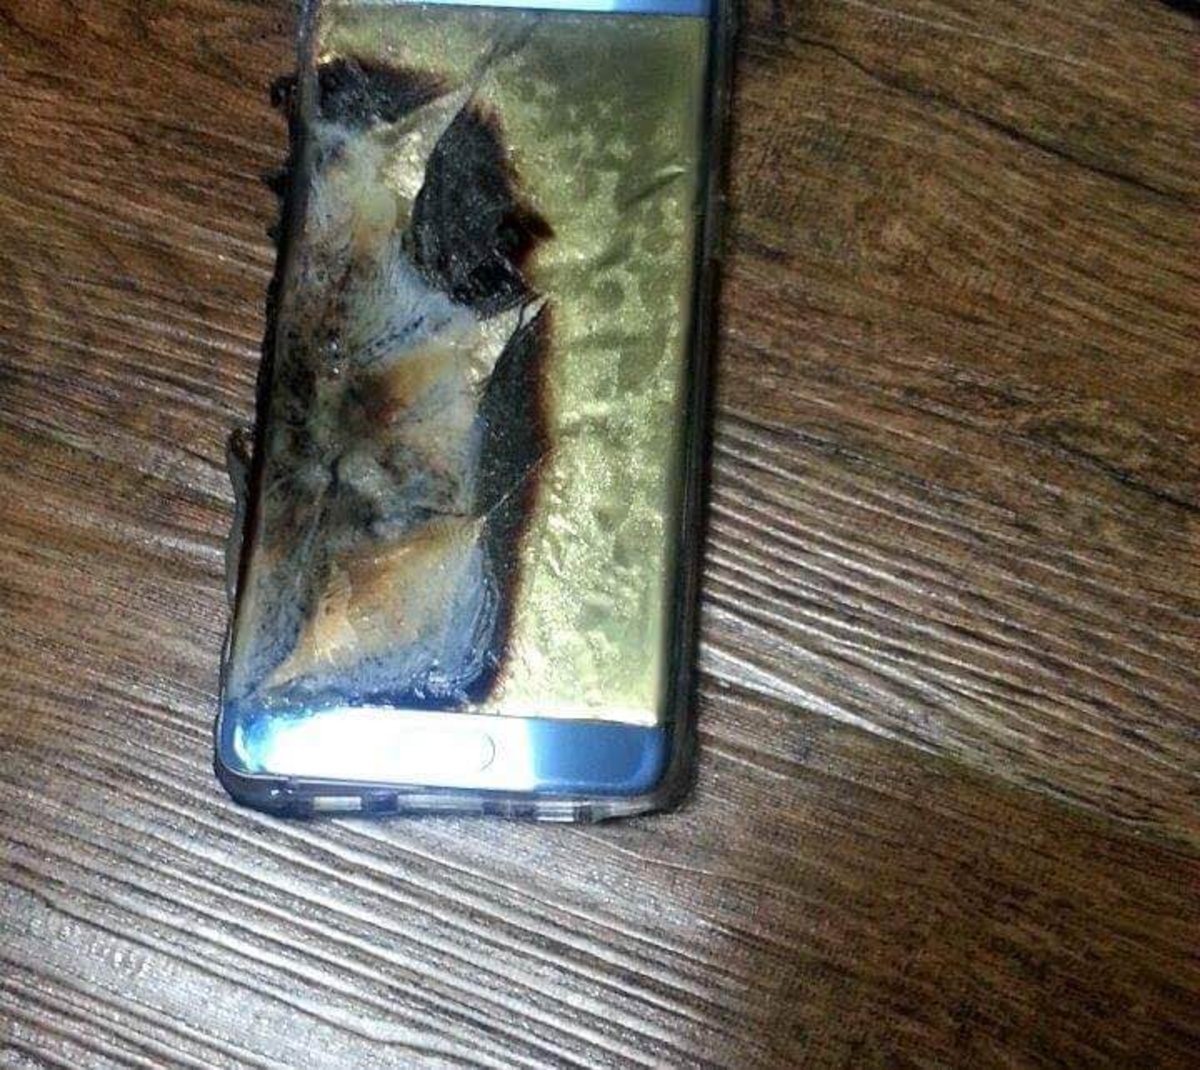 Un Samsung Galaxy Note7 explota durante la carga, ¡mira las imágenes de cómo ha quedado!